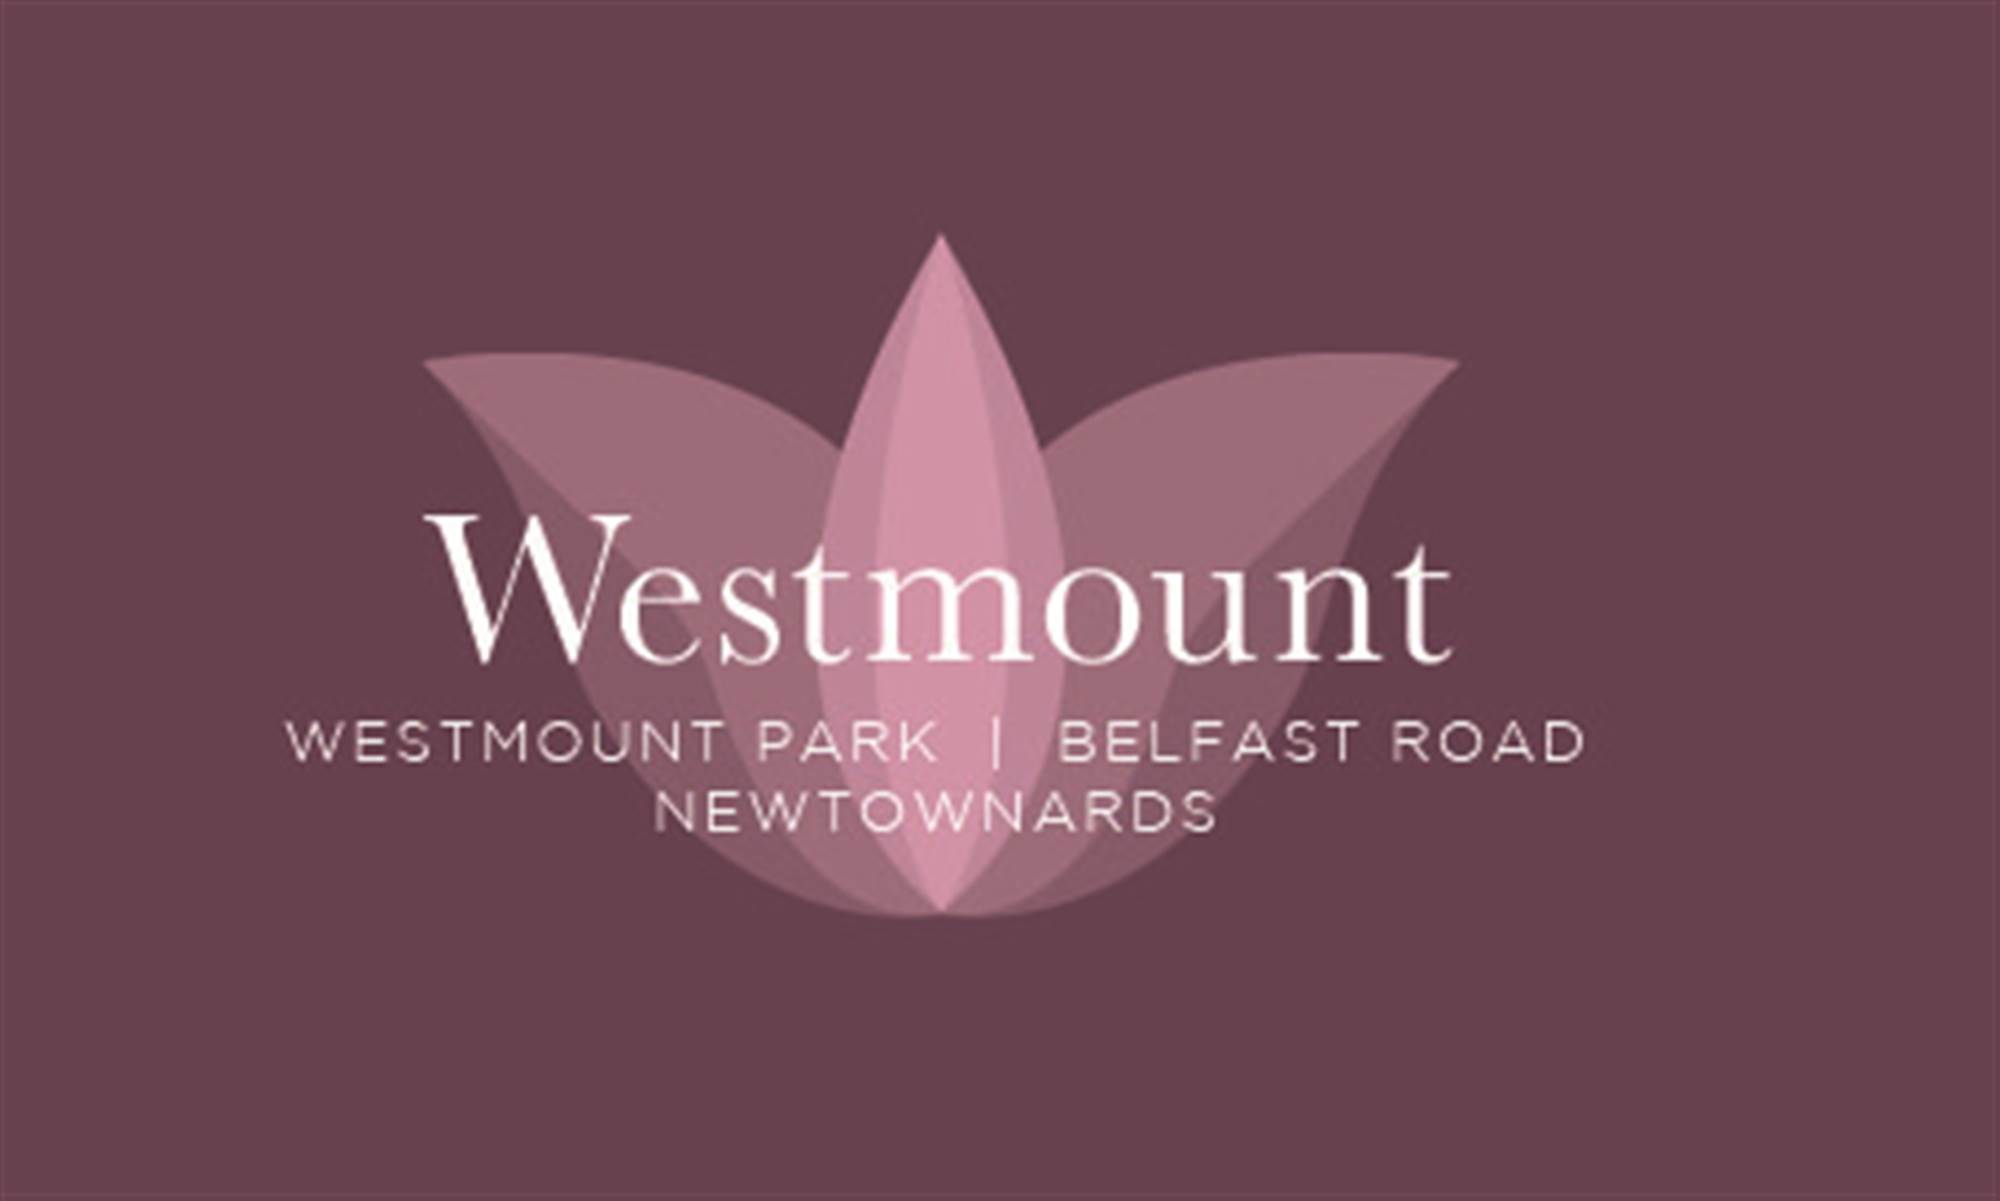 Westmount Park, Belfast Road